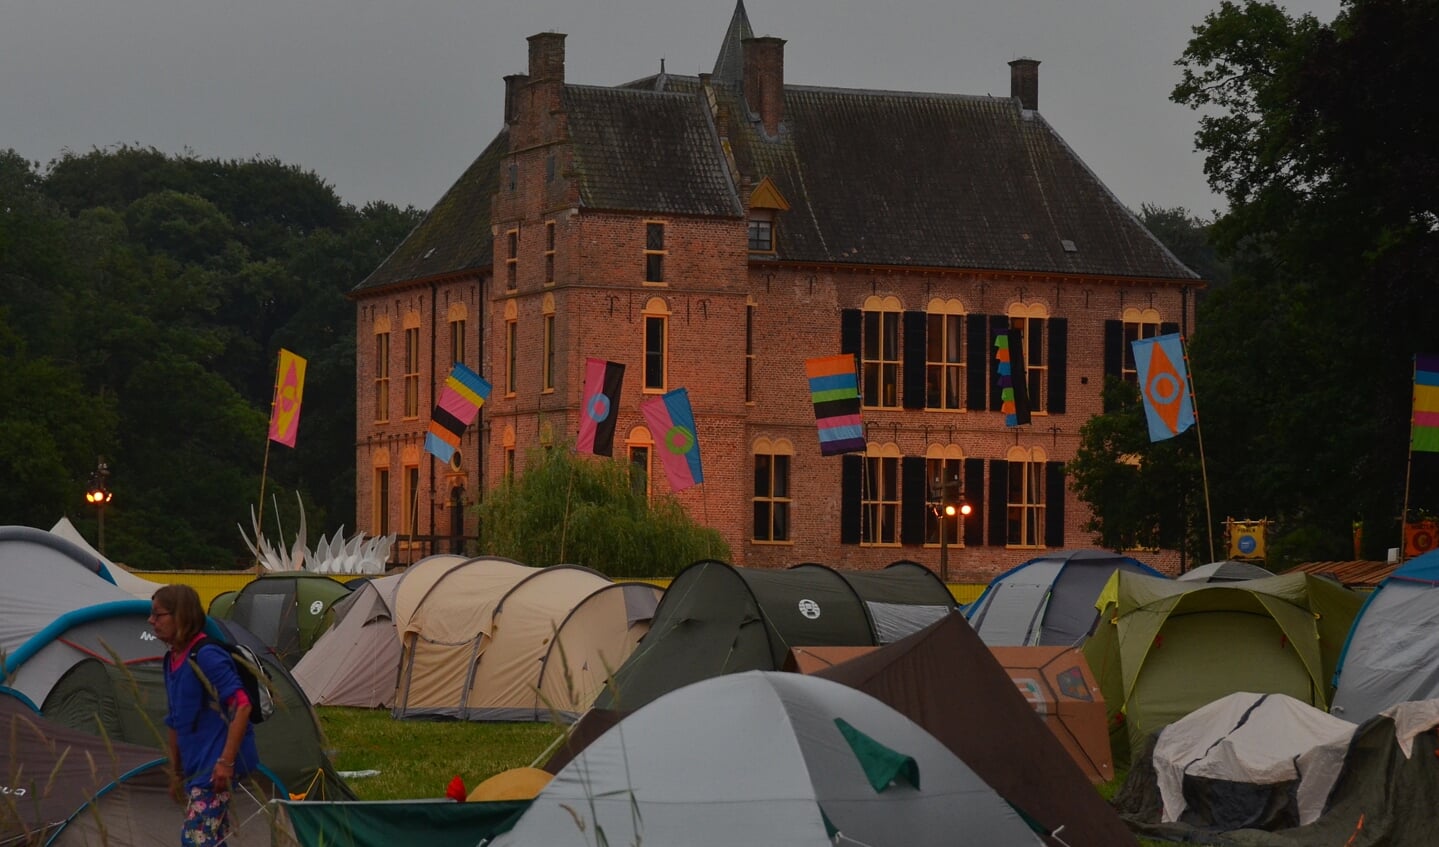 Wie écht niet naar huis wilde, bleef gewoon logeren op de camping. Foto: Achterhoekfoto.nl/Johan Braakman